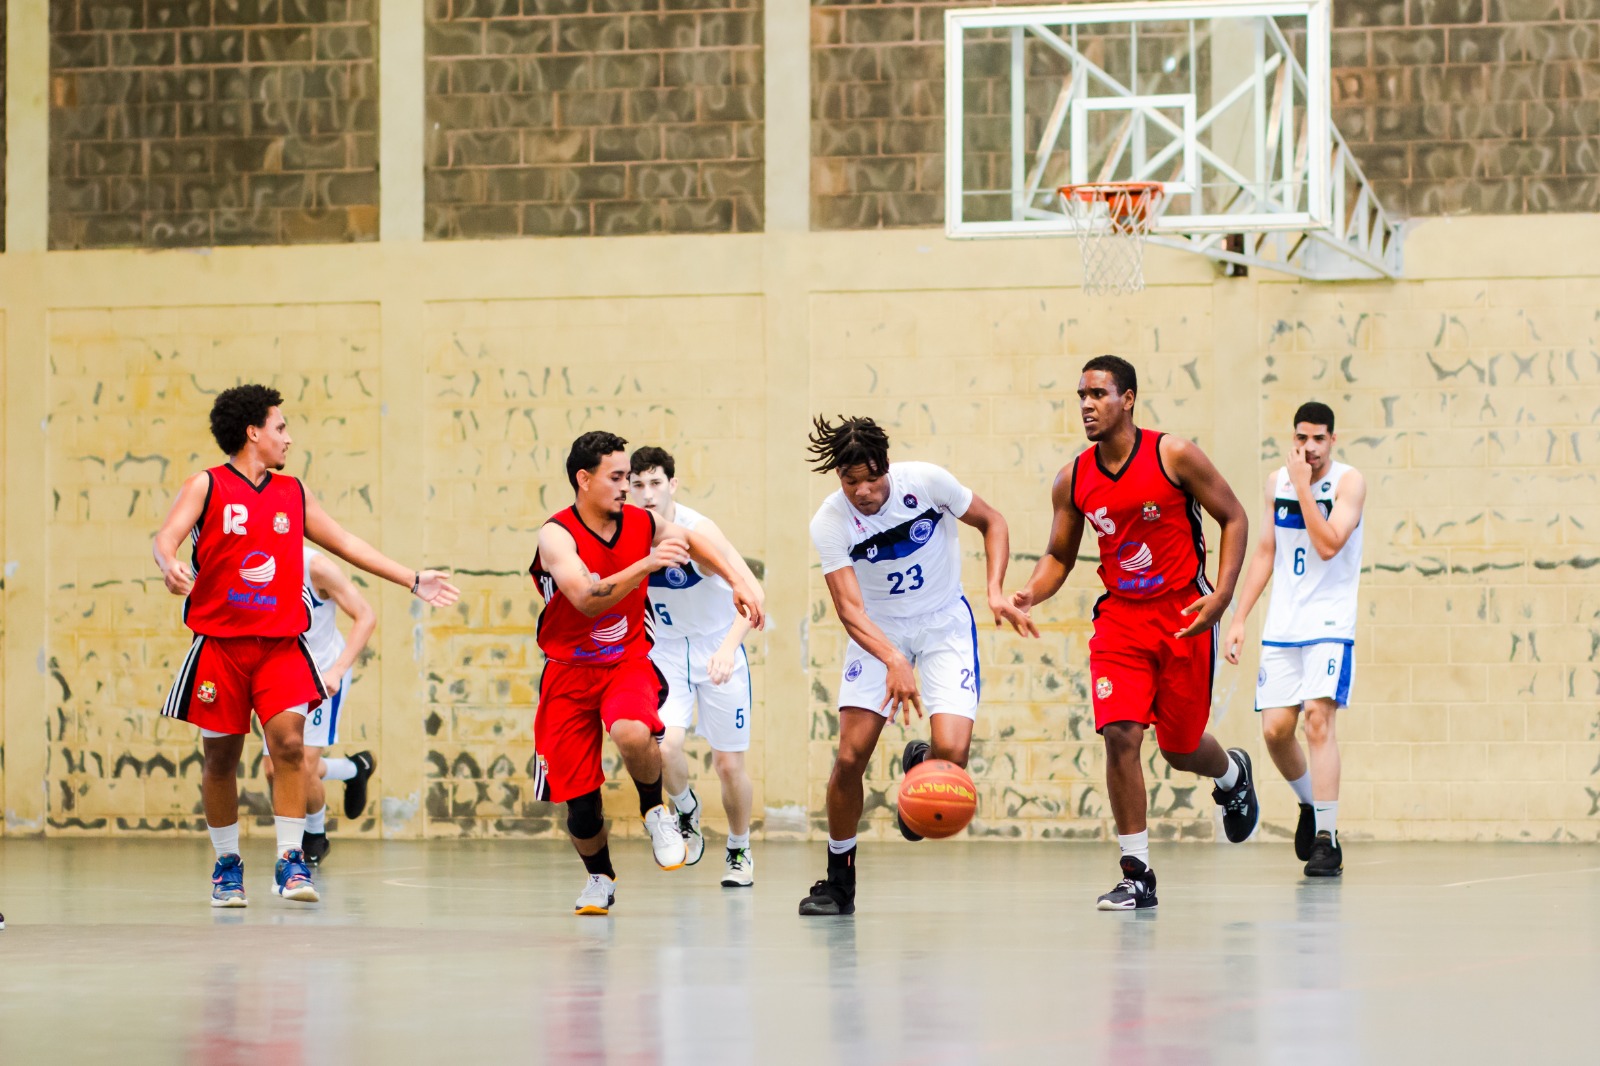 Cultura e justiça social: entenda a relação entre basquete e Hip Hop, basquete transforma sc